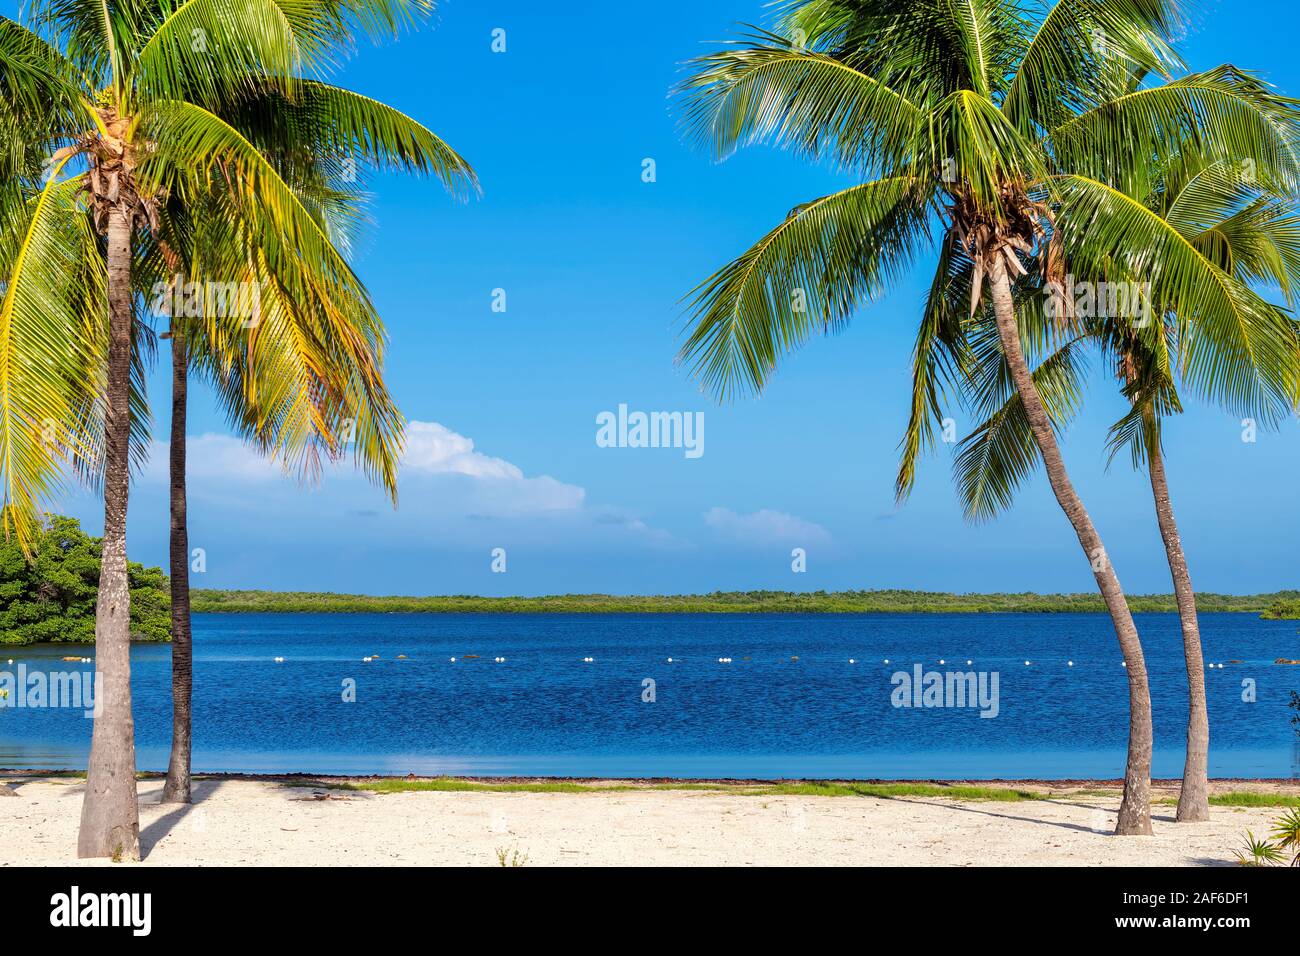 Palmiers tropicaux sur une plage de sable de Florida Keys. Banque D'Images